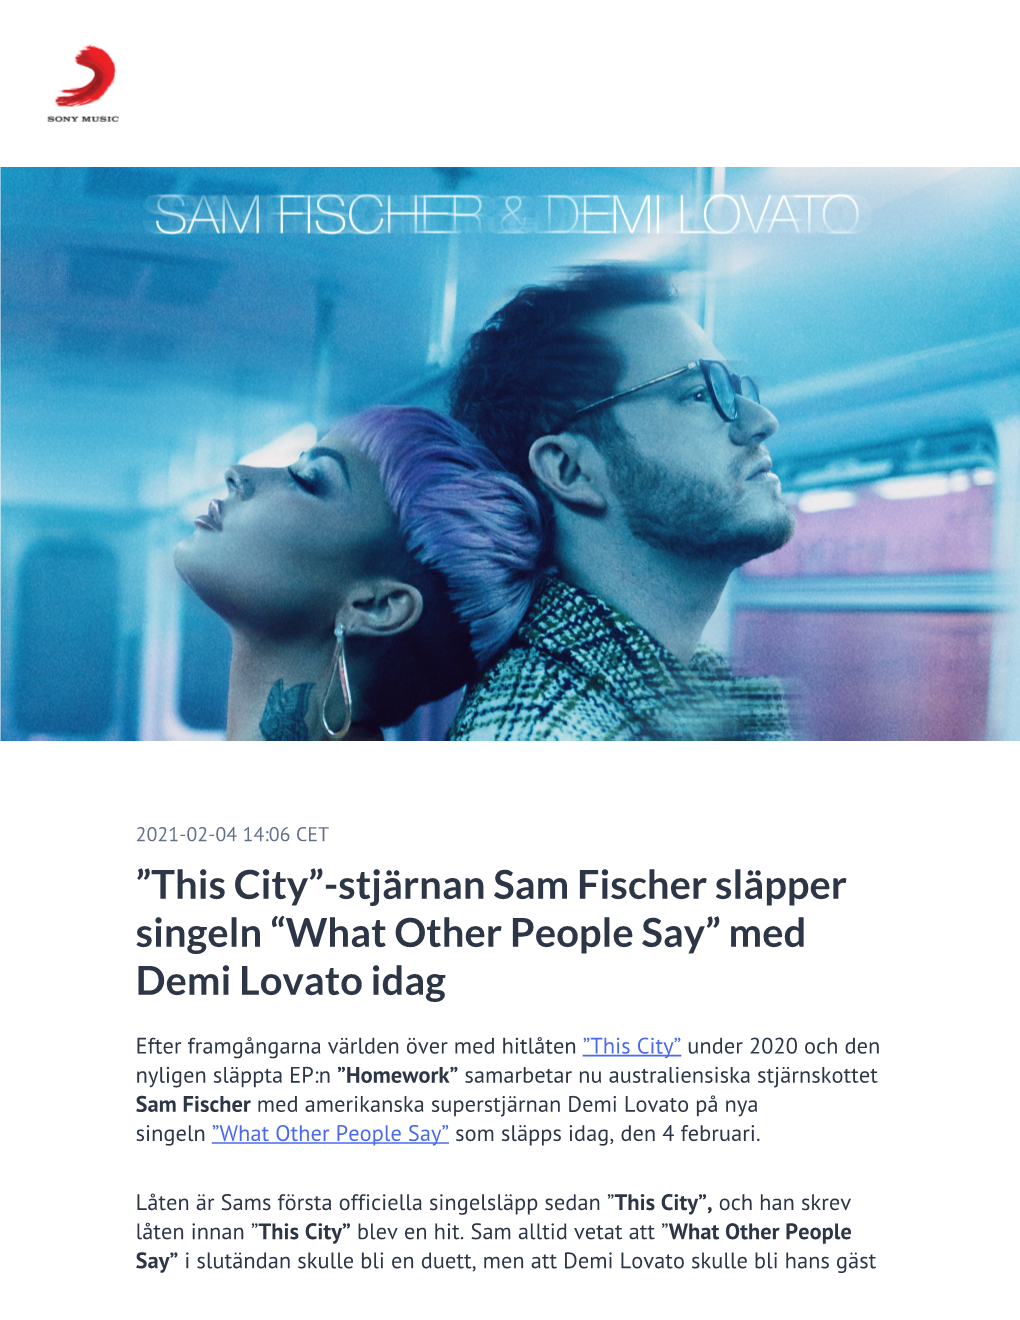 ​”This City”-Stjärnan Sam Fischer Släpper Singeln “What Other People